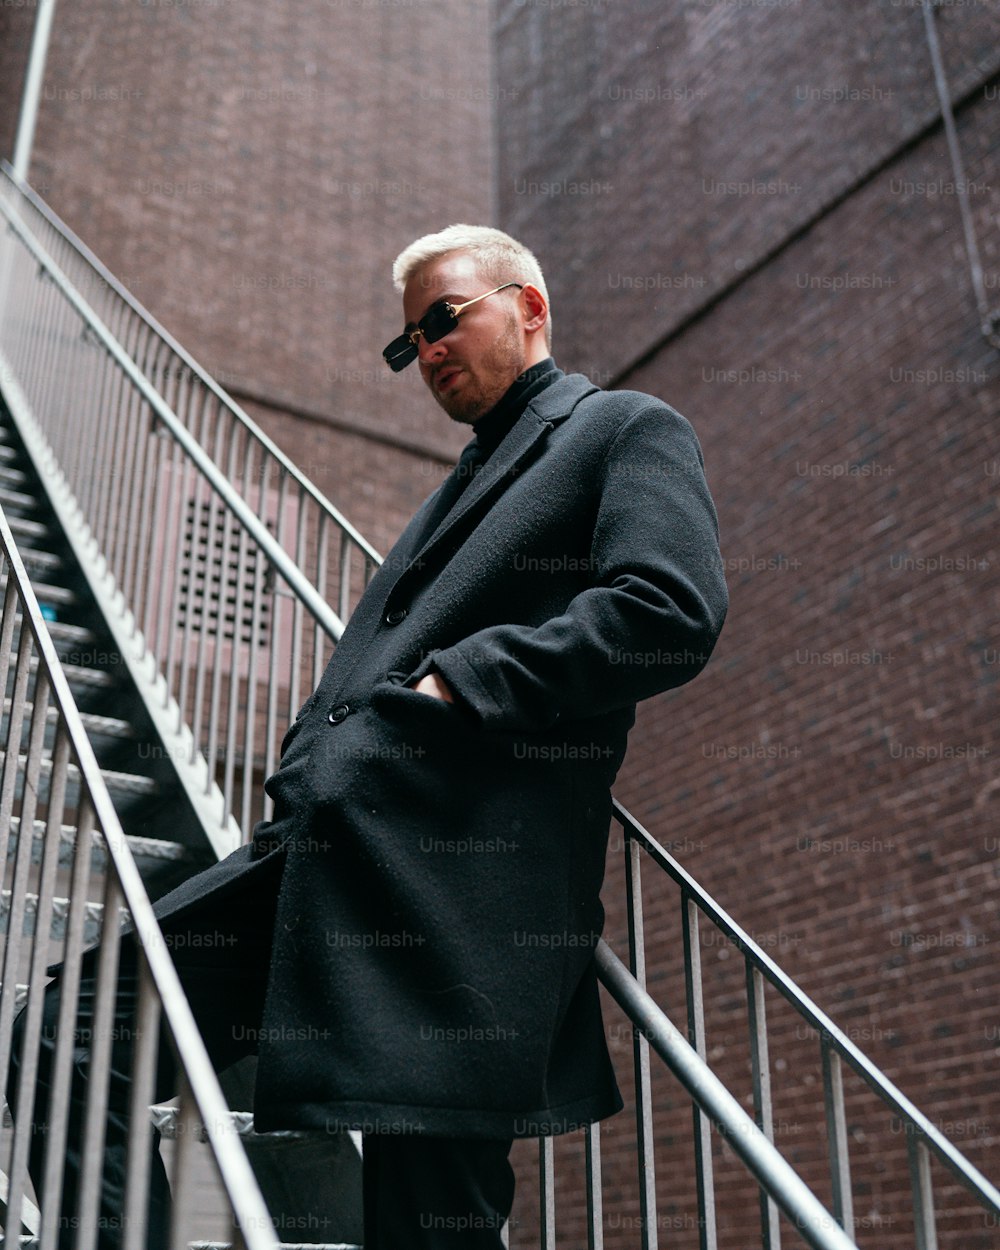 Un homme en manteau noir se tient debout sur une cage d’escalier